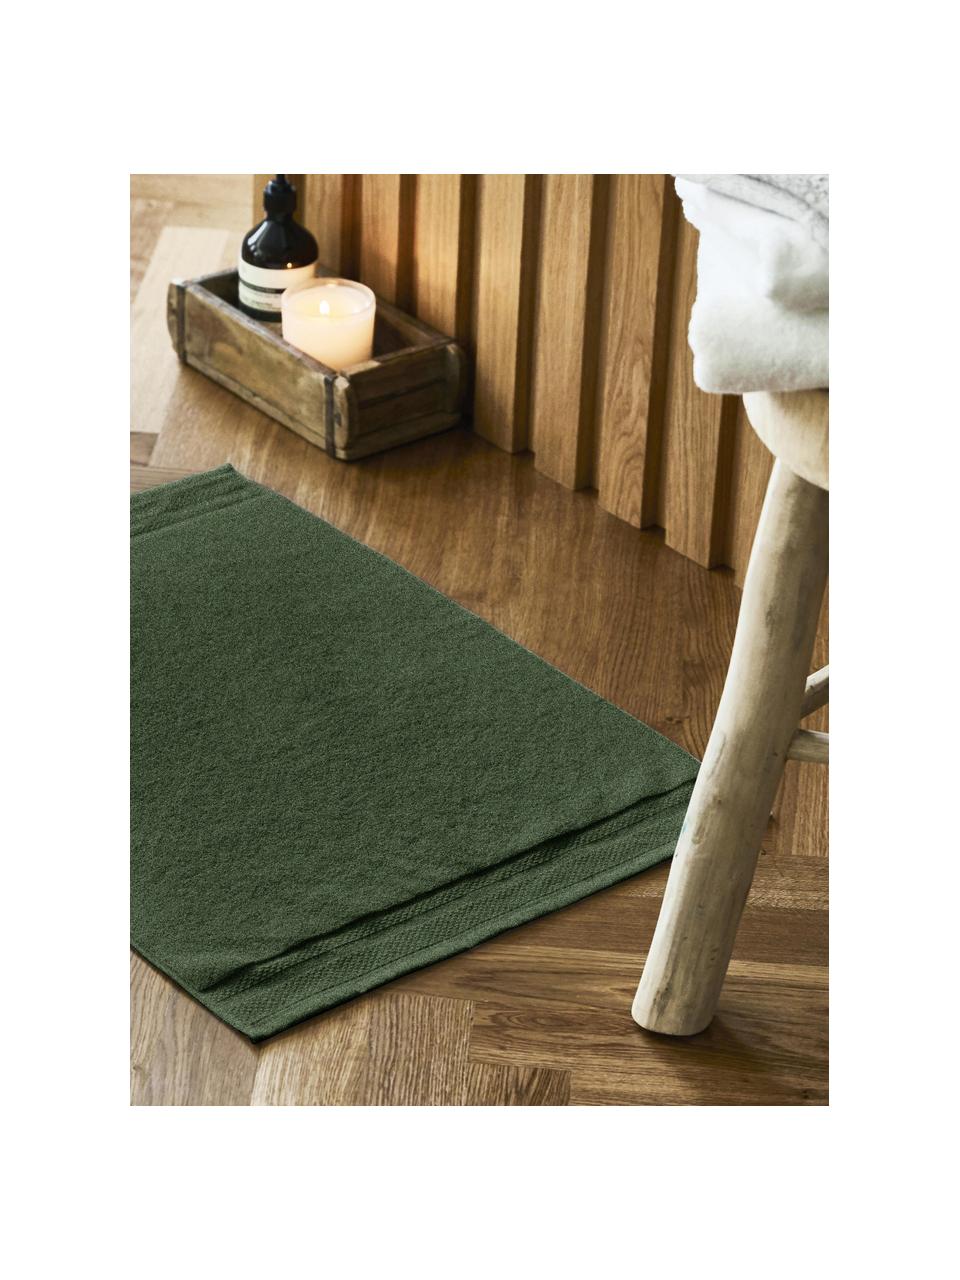 Dywanik łazienkowy z bawełny organicznej Premium, antypoślizgowy, Zielony, S 50 x D 70 cm